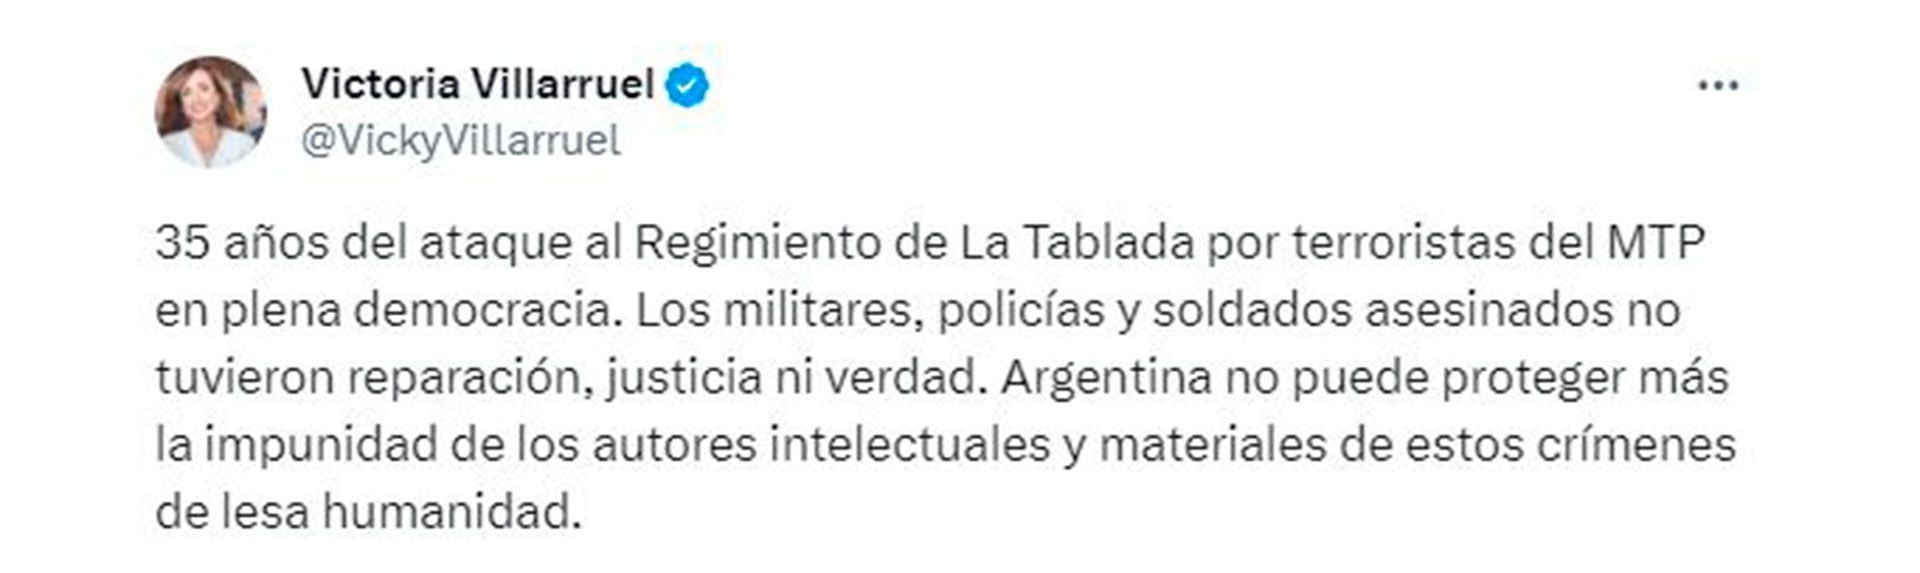 tuit de Victoria Villarruel por los 35 años del ataque a La Tablada